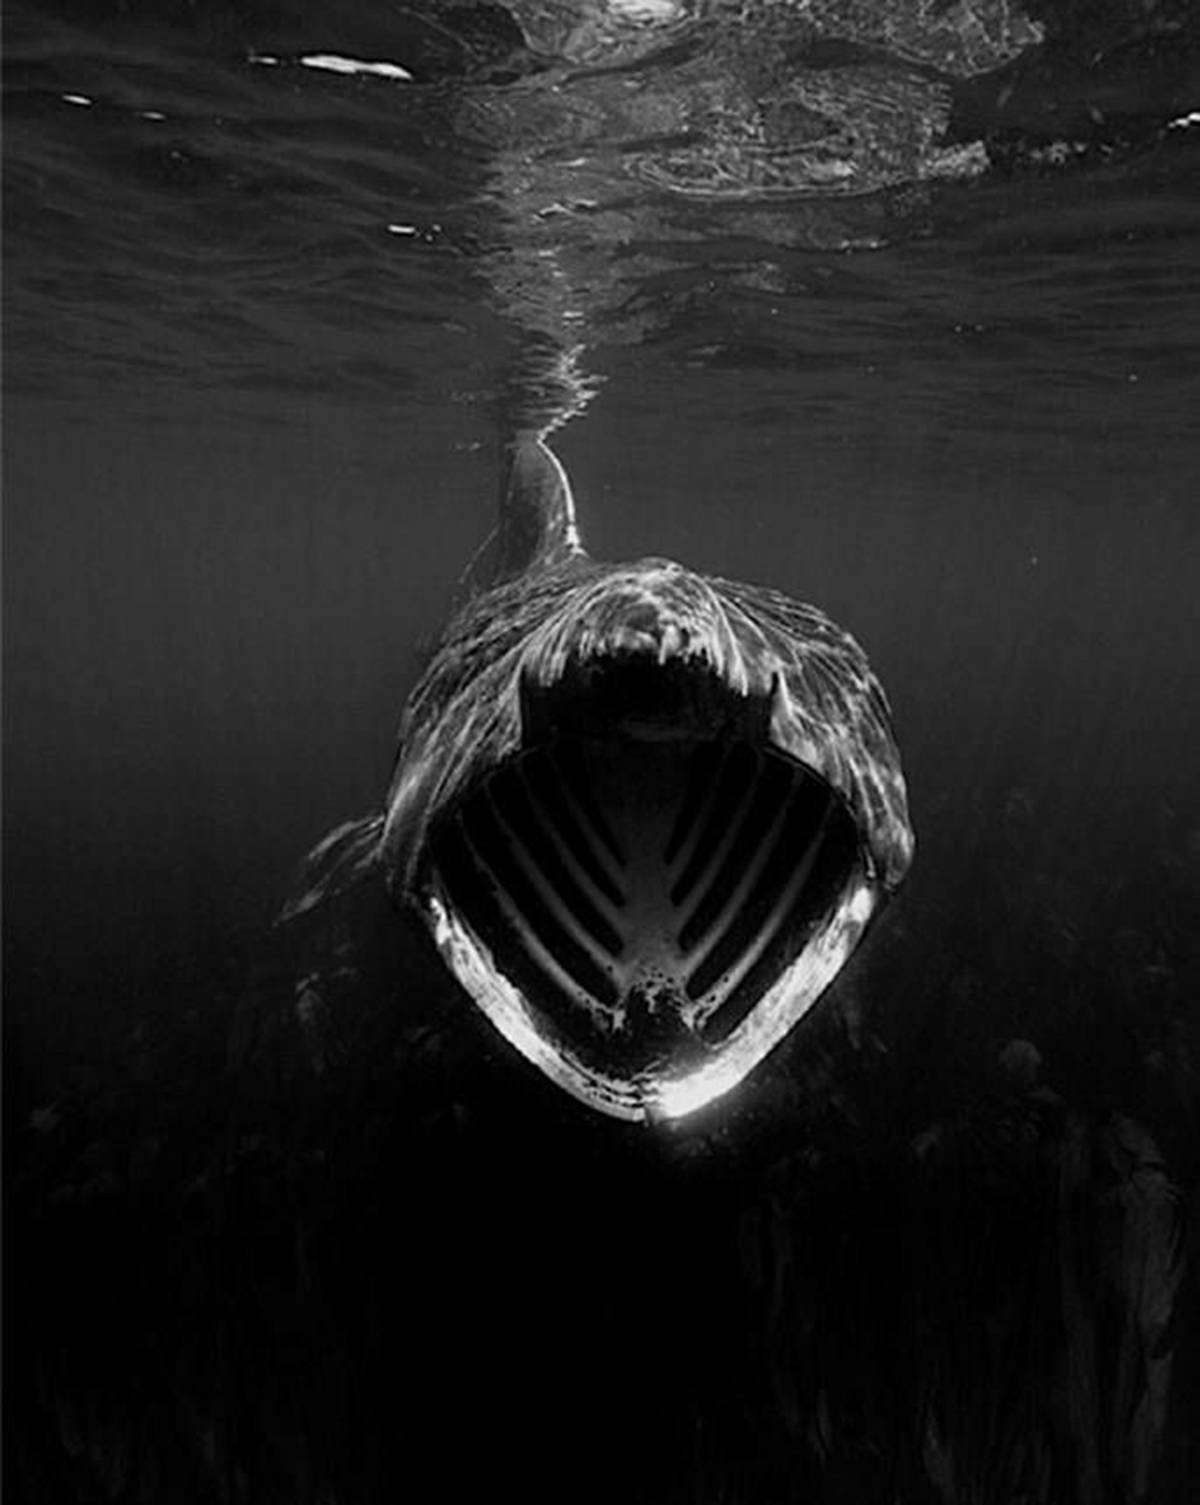 深海恐惧症图片真实图片